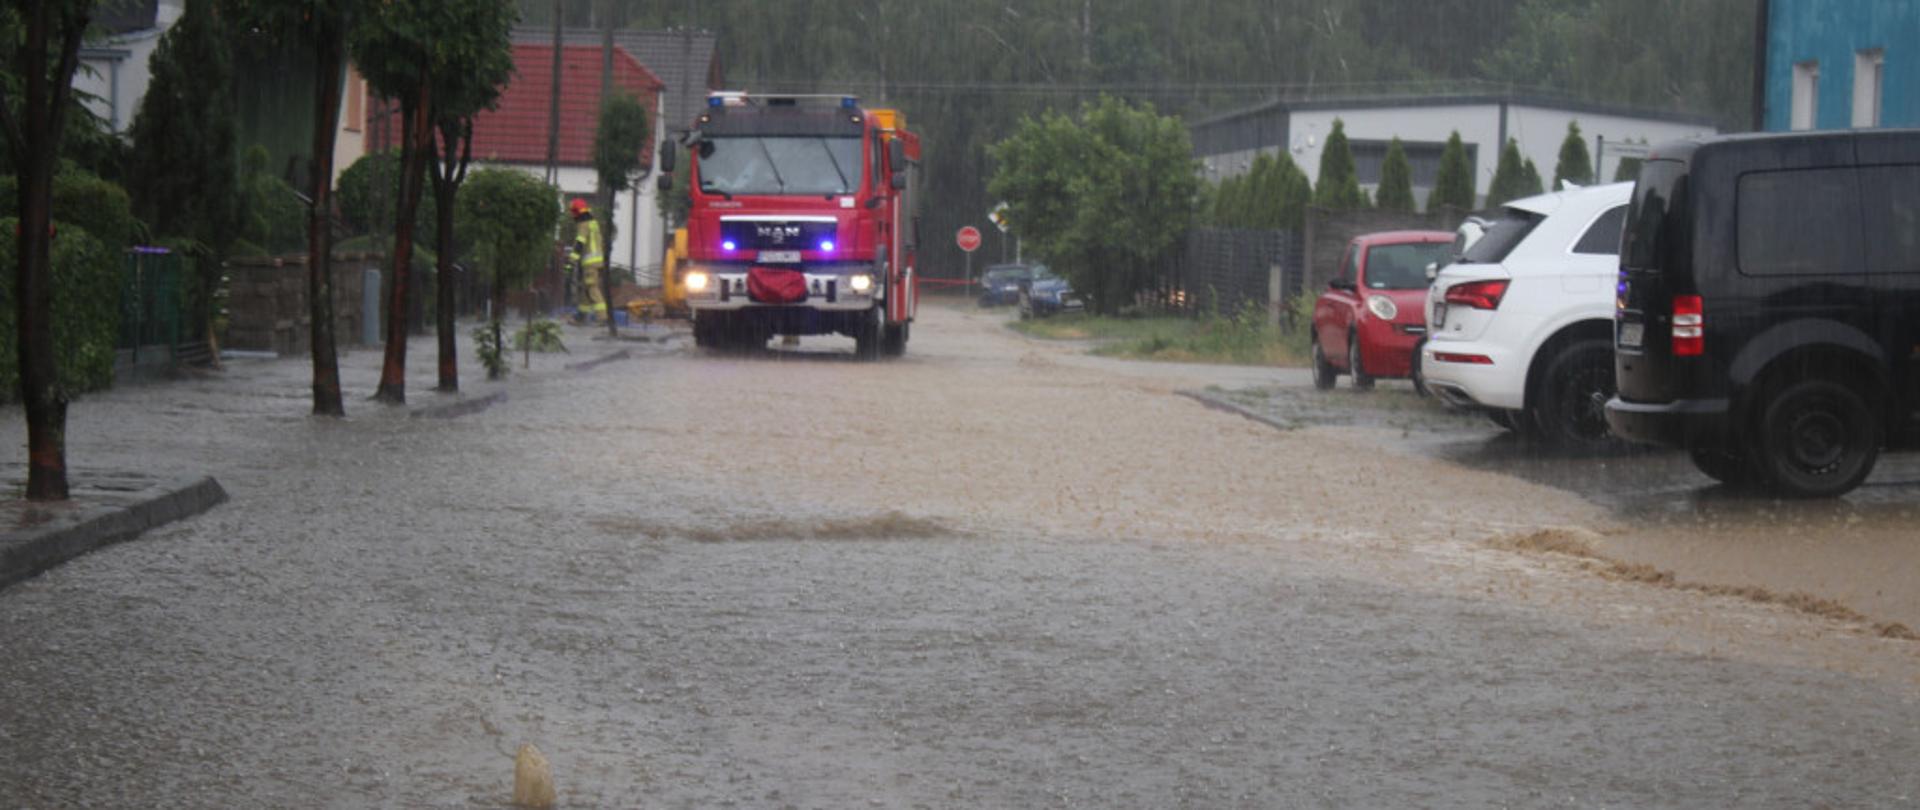 Na zdjęciu widać zalaną ulicę, stojące samochody. W tle znajduje się samochód pożarniczy podczas prowadzenia działań ratowniczych.